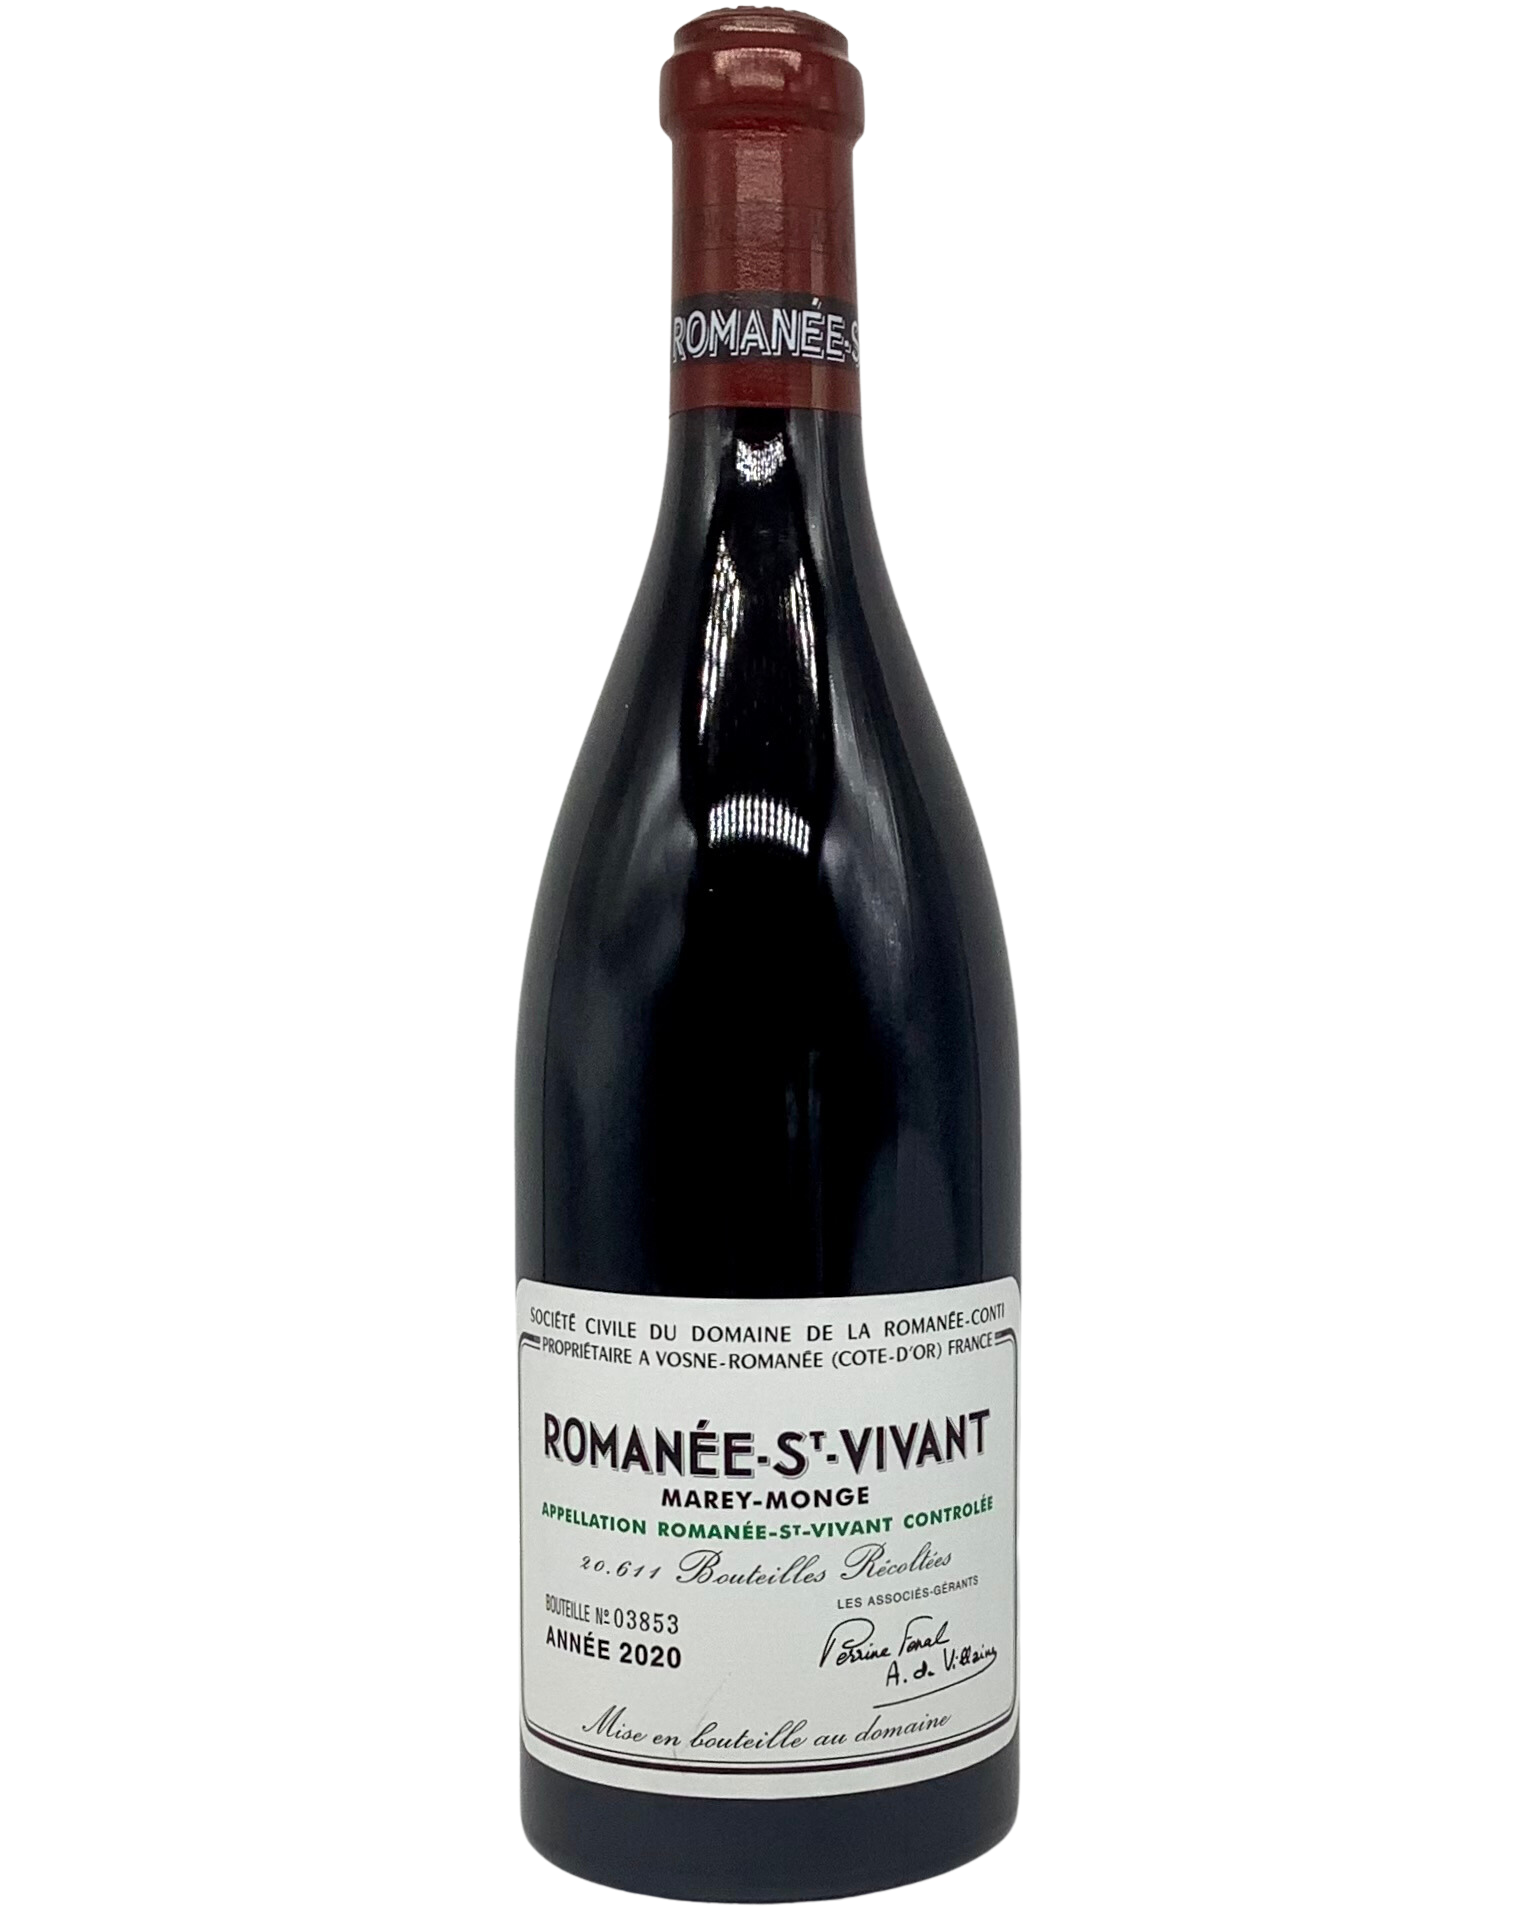 Domaine de la Romanée-Conti, Pinot Noir, Romanée-Saint-Vivant Grand Cru, Vosne-Romanée, France 2020 biodynamic